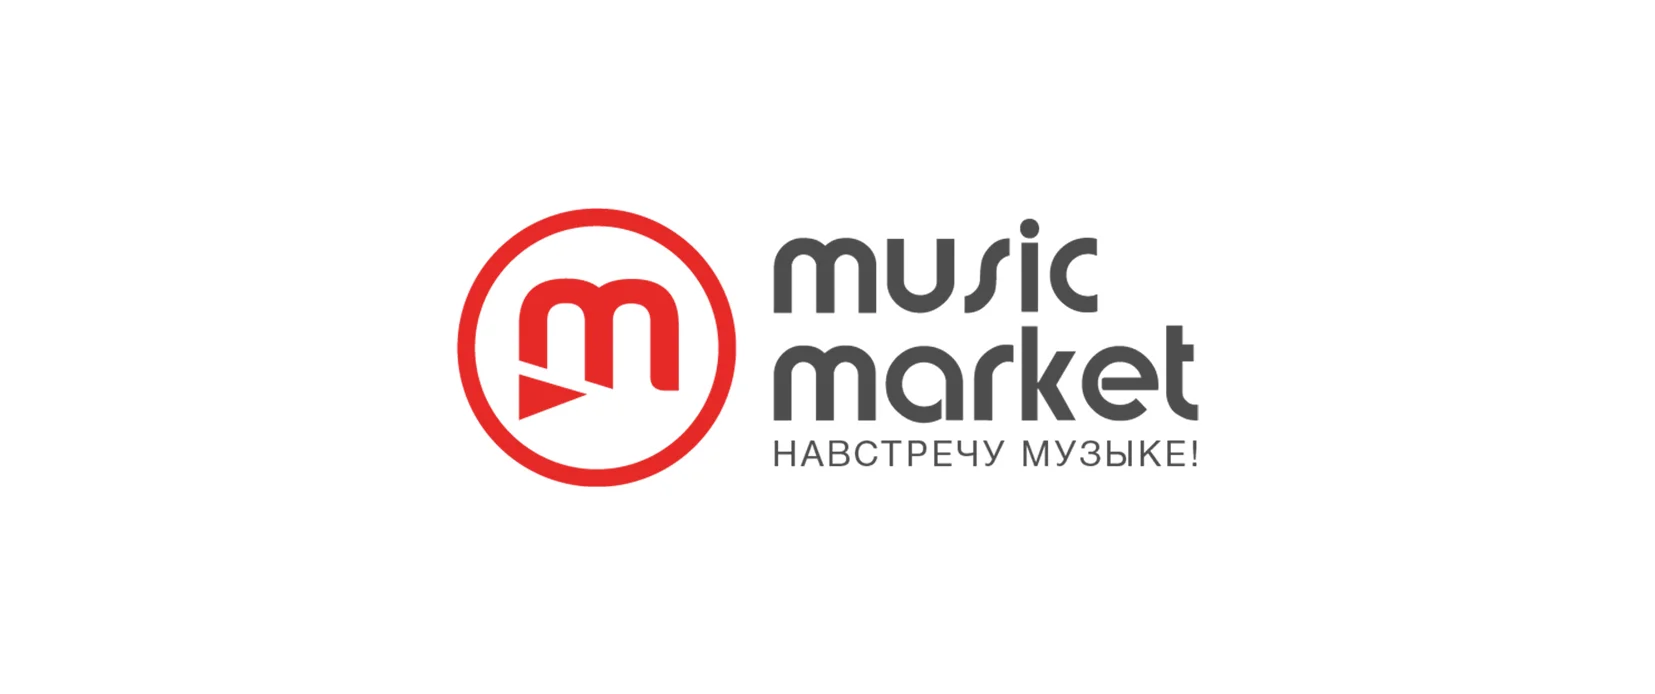 musicmarket.by - музыкальный магазин